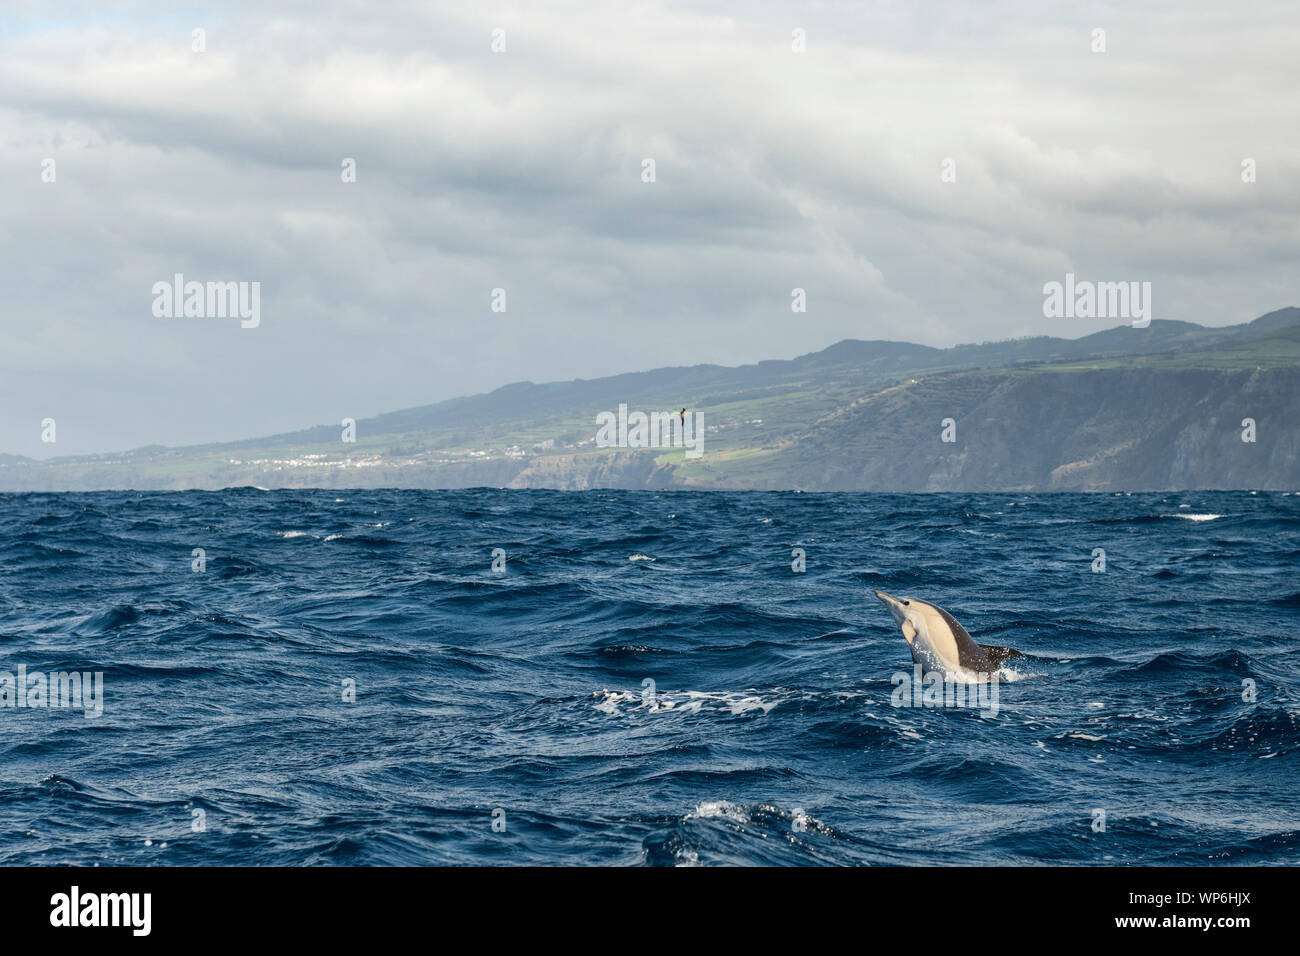 Grupo de delfines comunes en las aguas de las Islas Azores, cerca de la isla de Sao Miguel. El delfín común es el nombre dado a dos especies de delfines ma Foto de stock